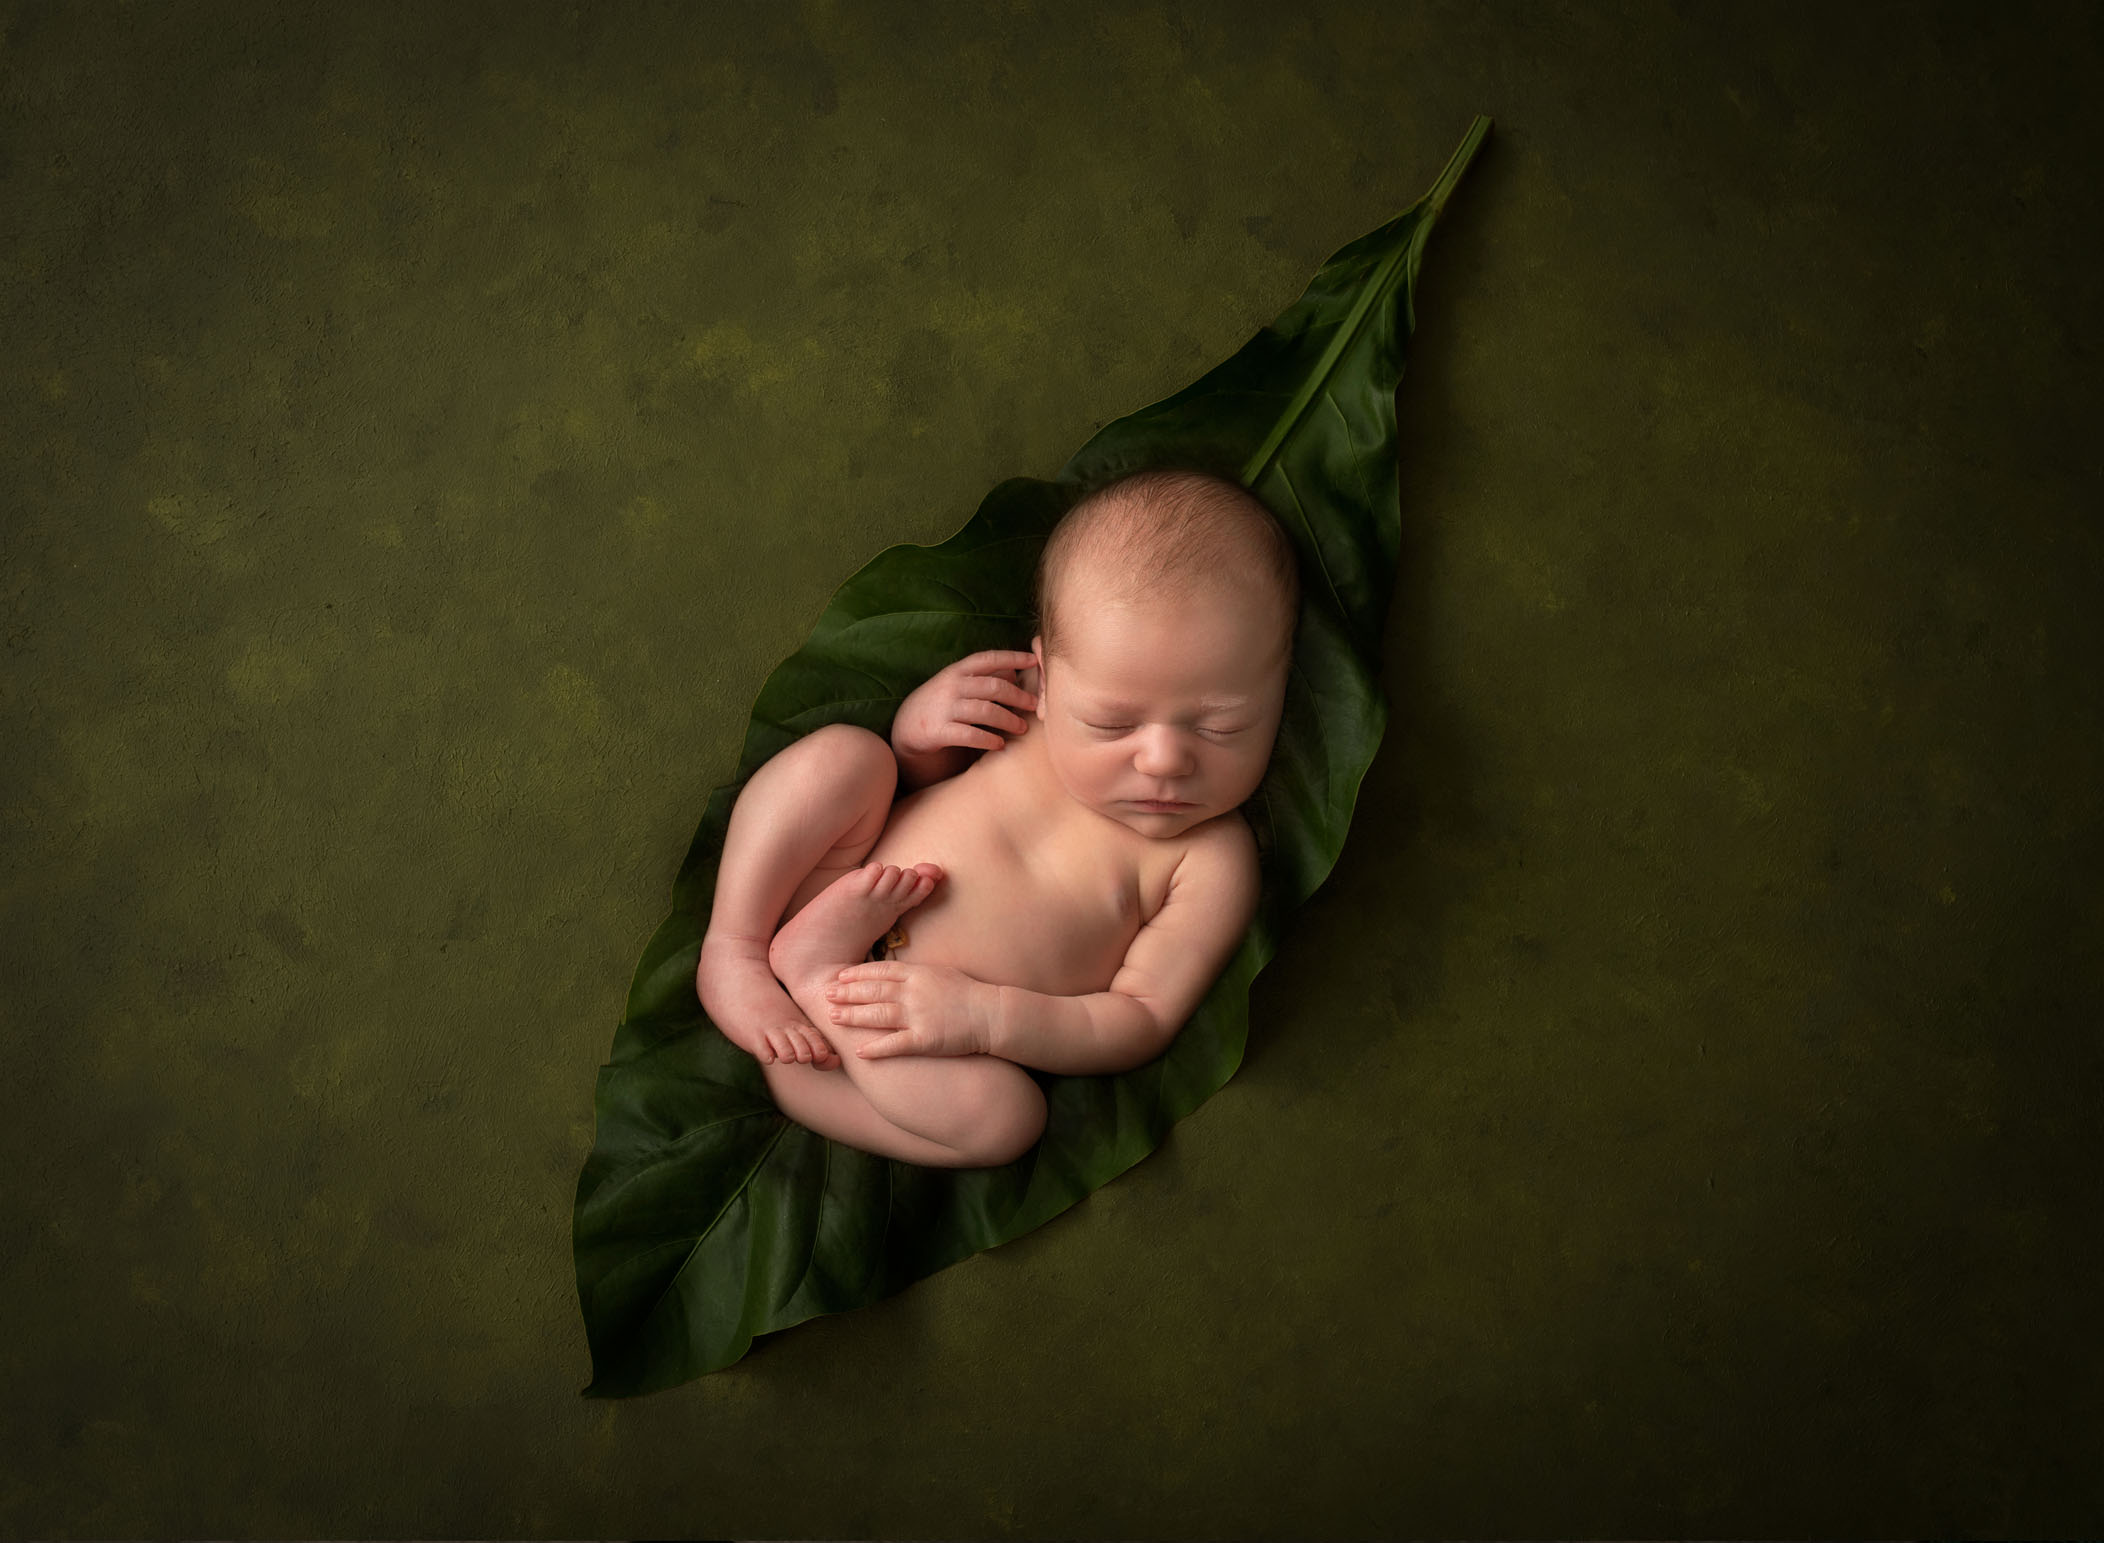 Newborn baby sleeping on tobacco leaf